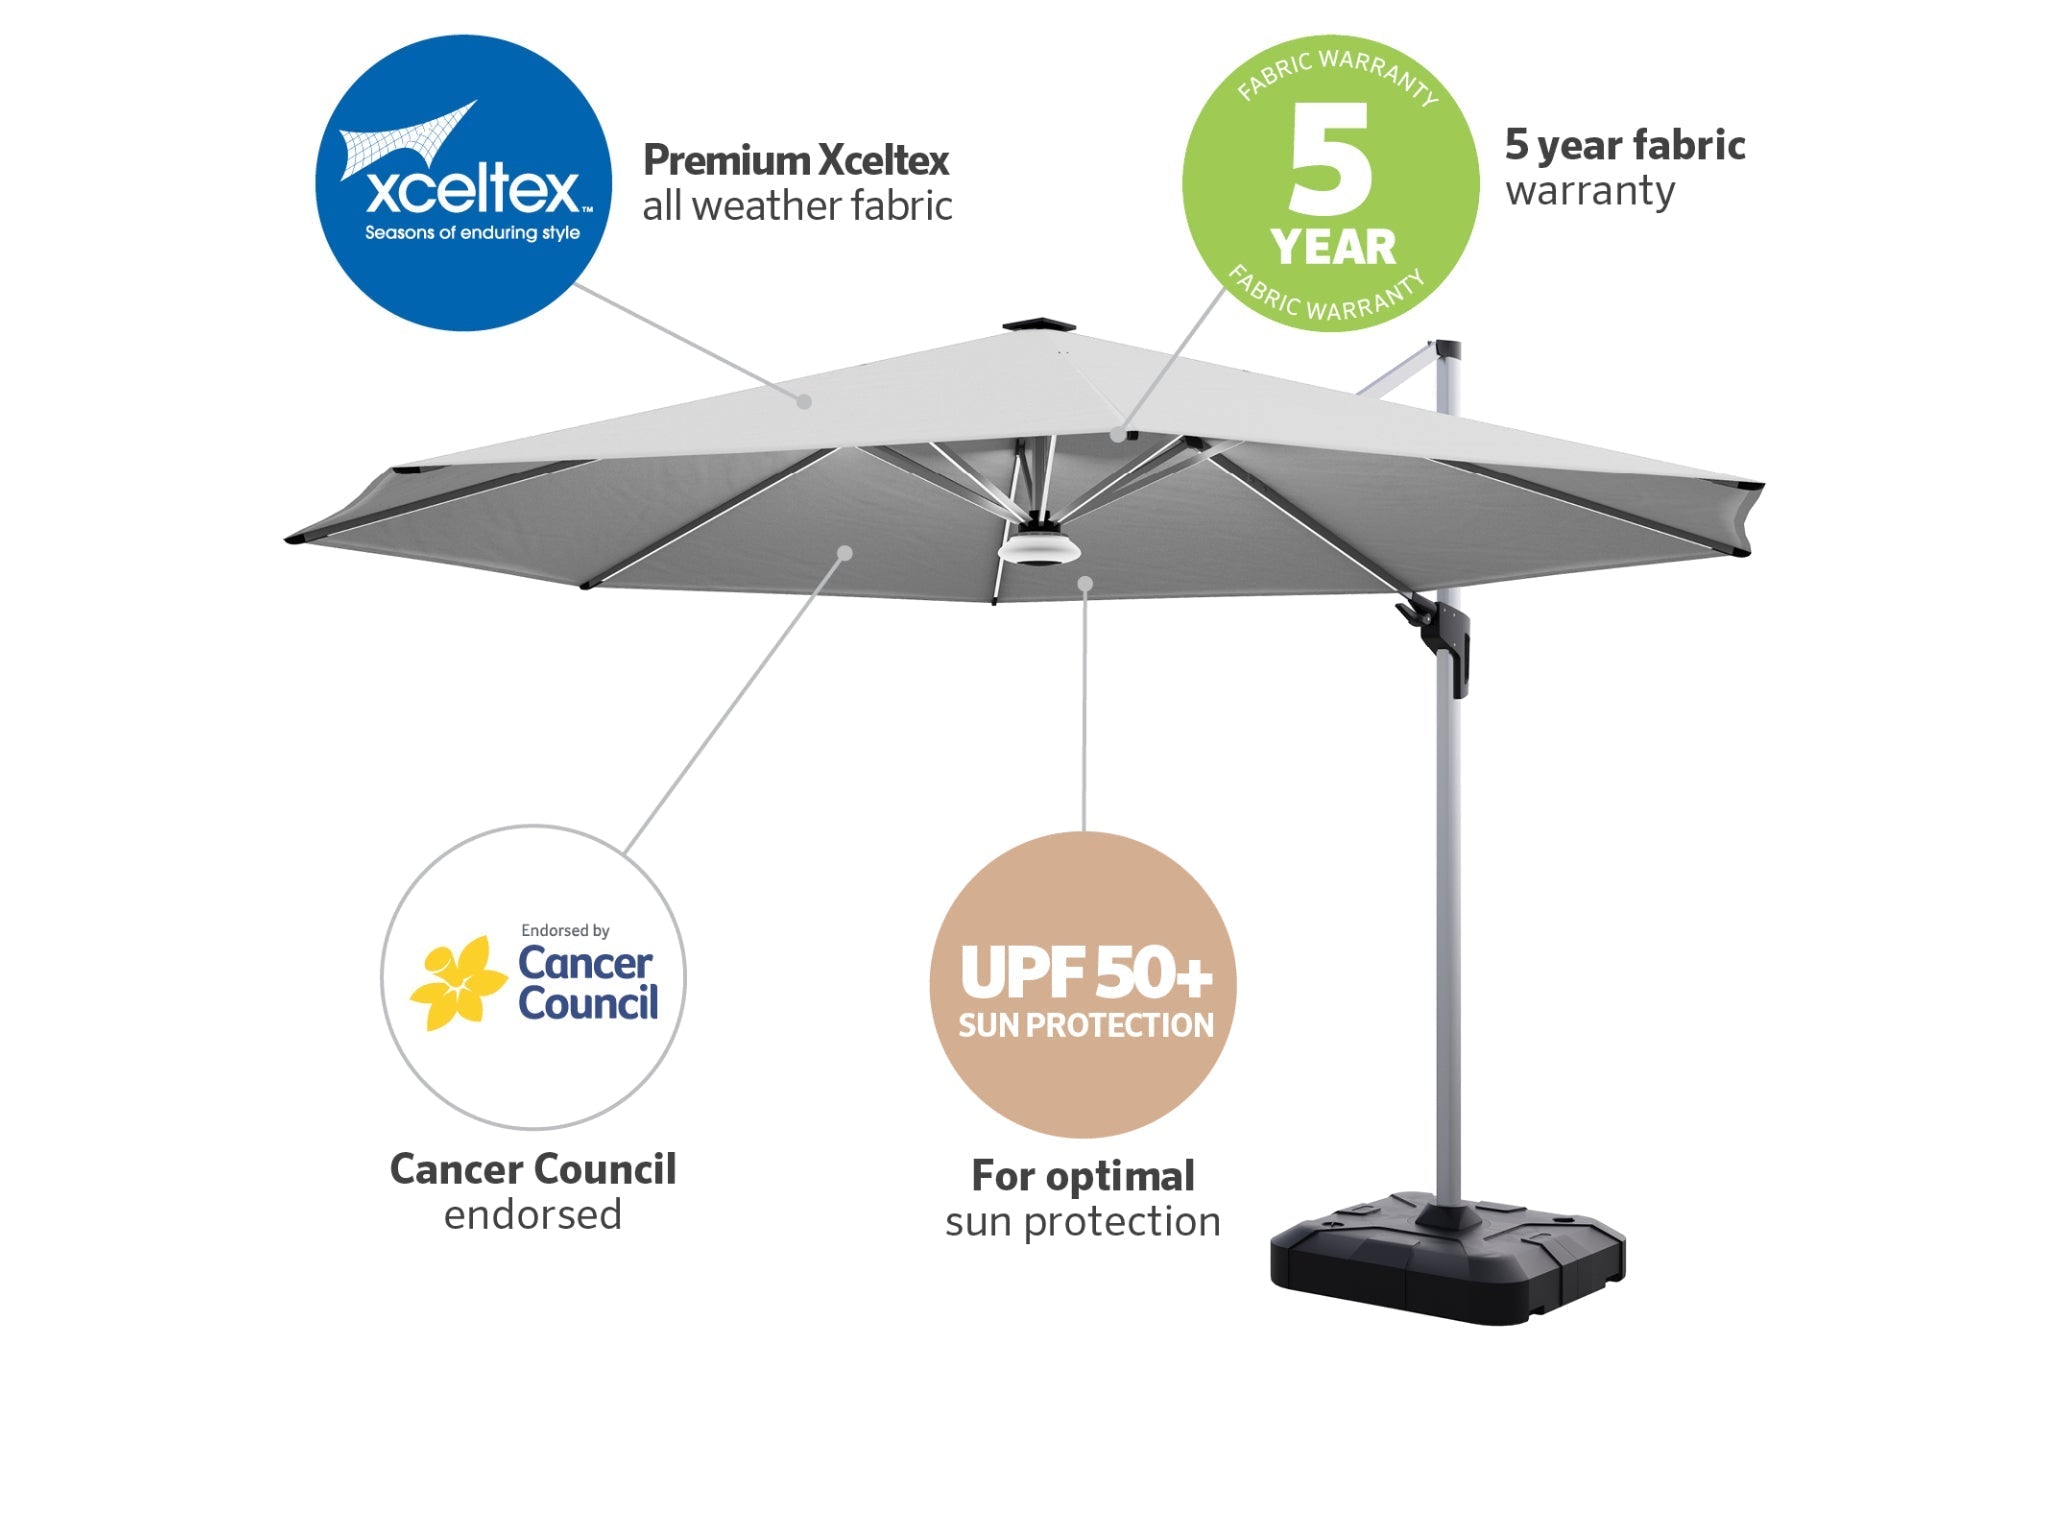 Coolaroo Brighton 3.5m Round LED Cantilever Umbrella — Steel